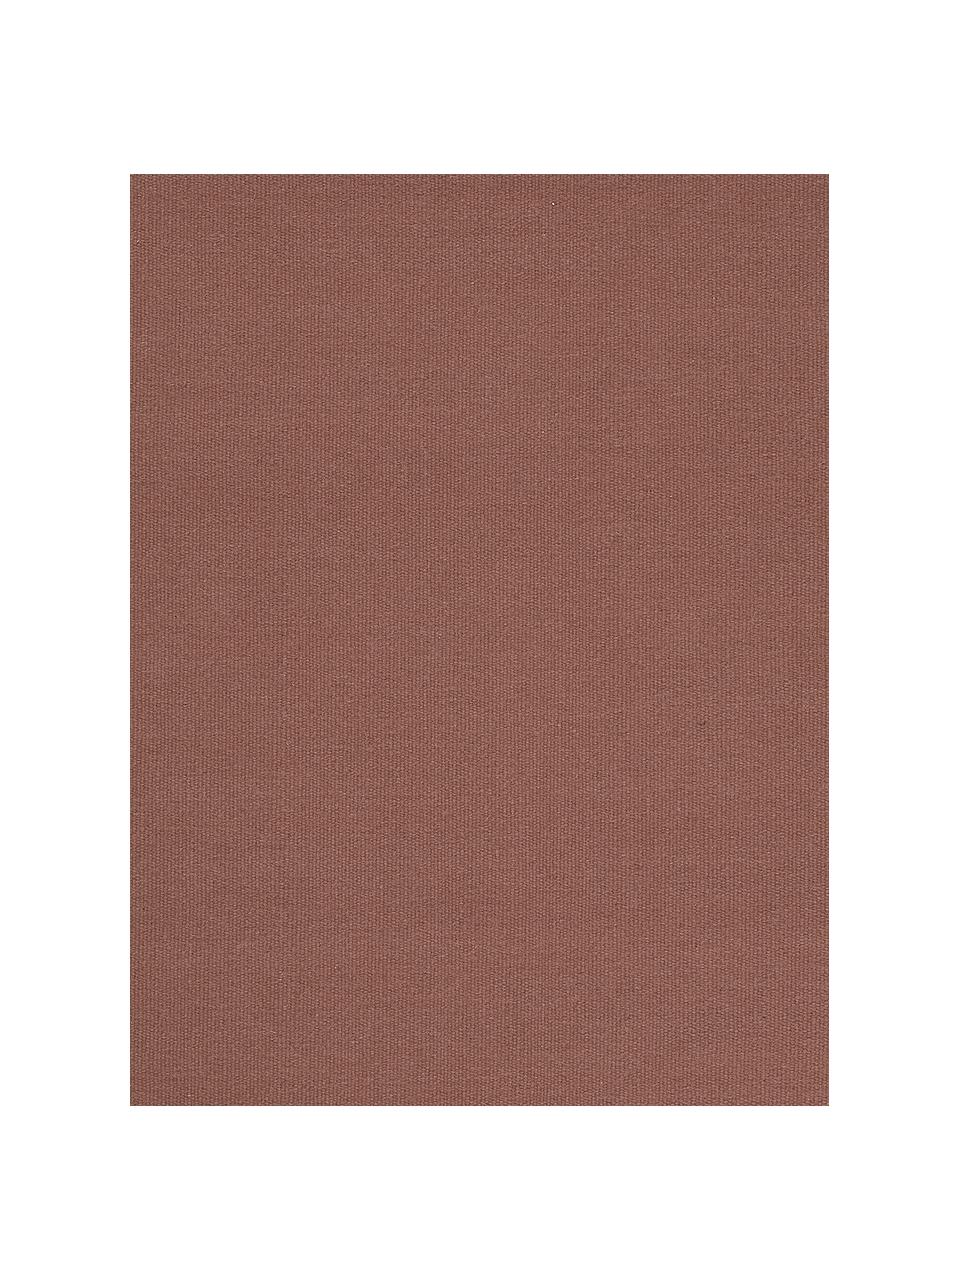 Tappeto kilim in lana marrone castagna tessuto a mano con frange Rainbow, Frange: 100% cotone Nel caso dei , Marrone rosso, Larg. 170 x Lung. 240 cm  (taglia M)